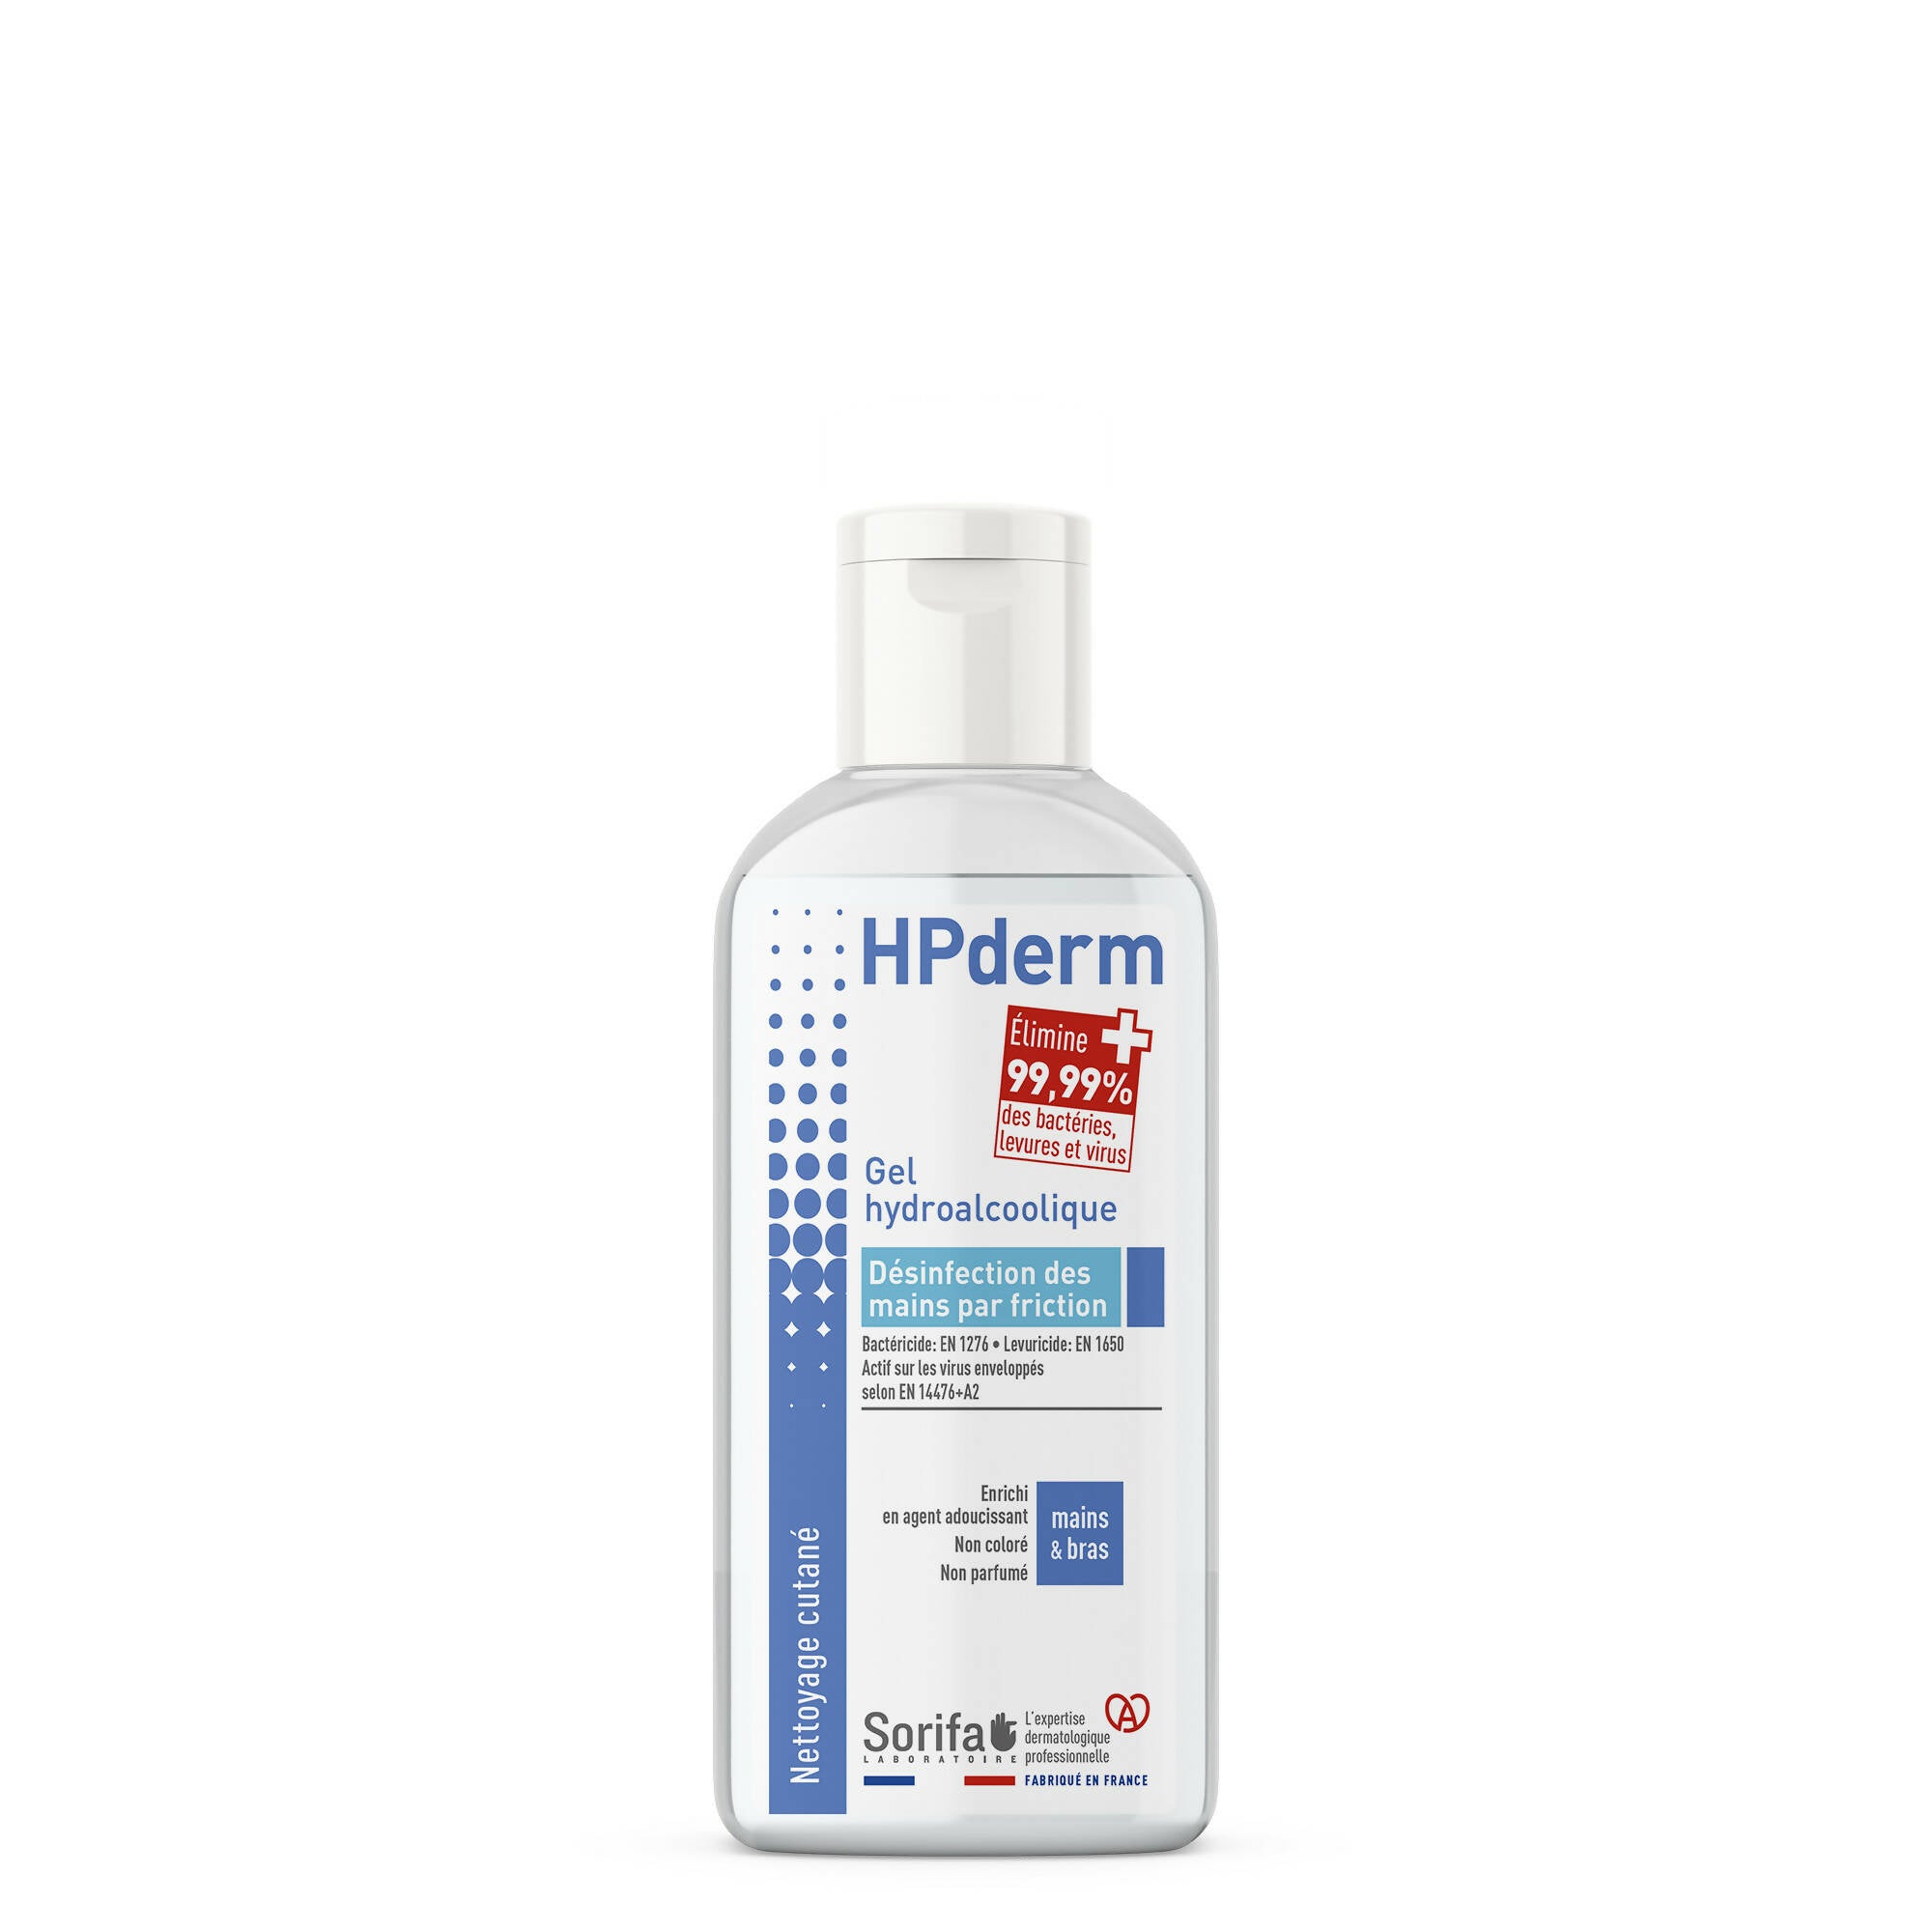 SORIFA - Lot de 10 - HPderm Gel hydroalcoolique pour la désinfection des mains - Flacon 100 ml - 0